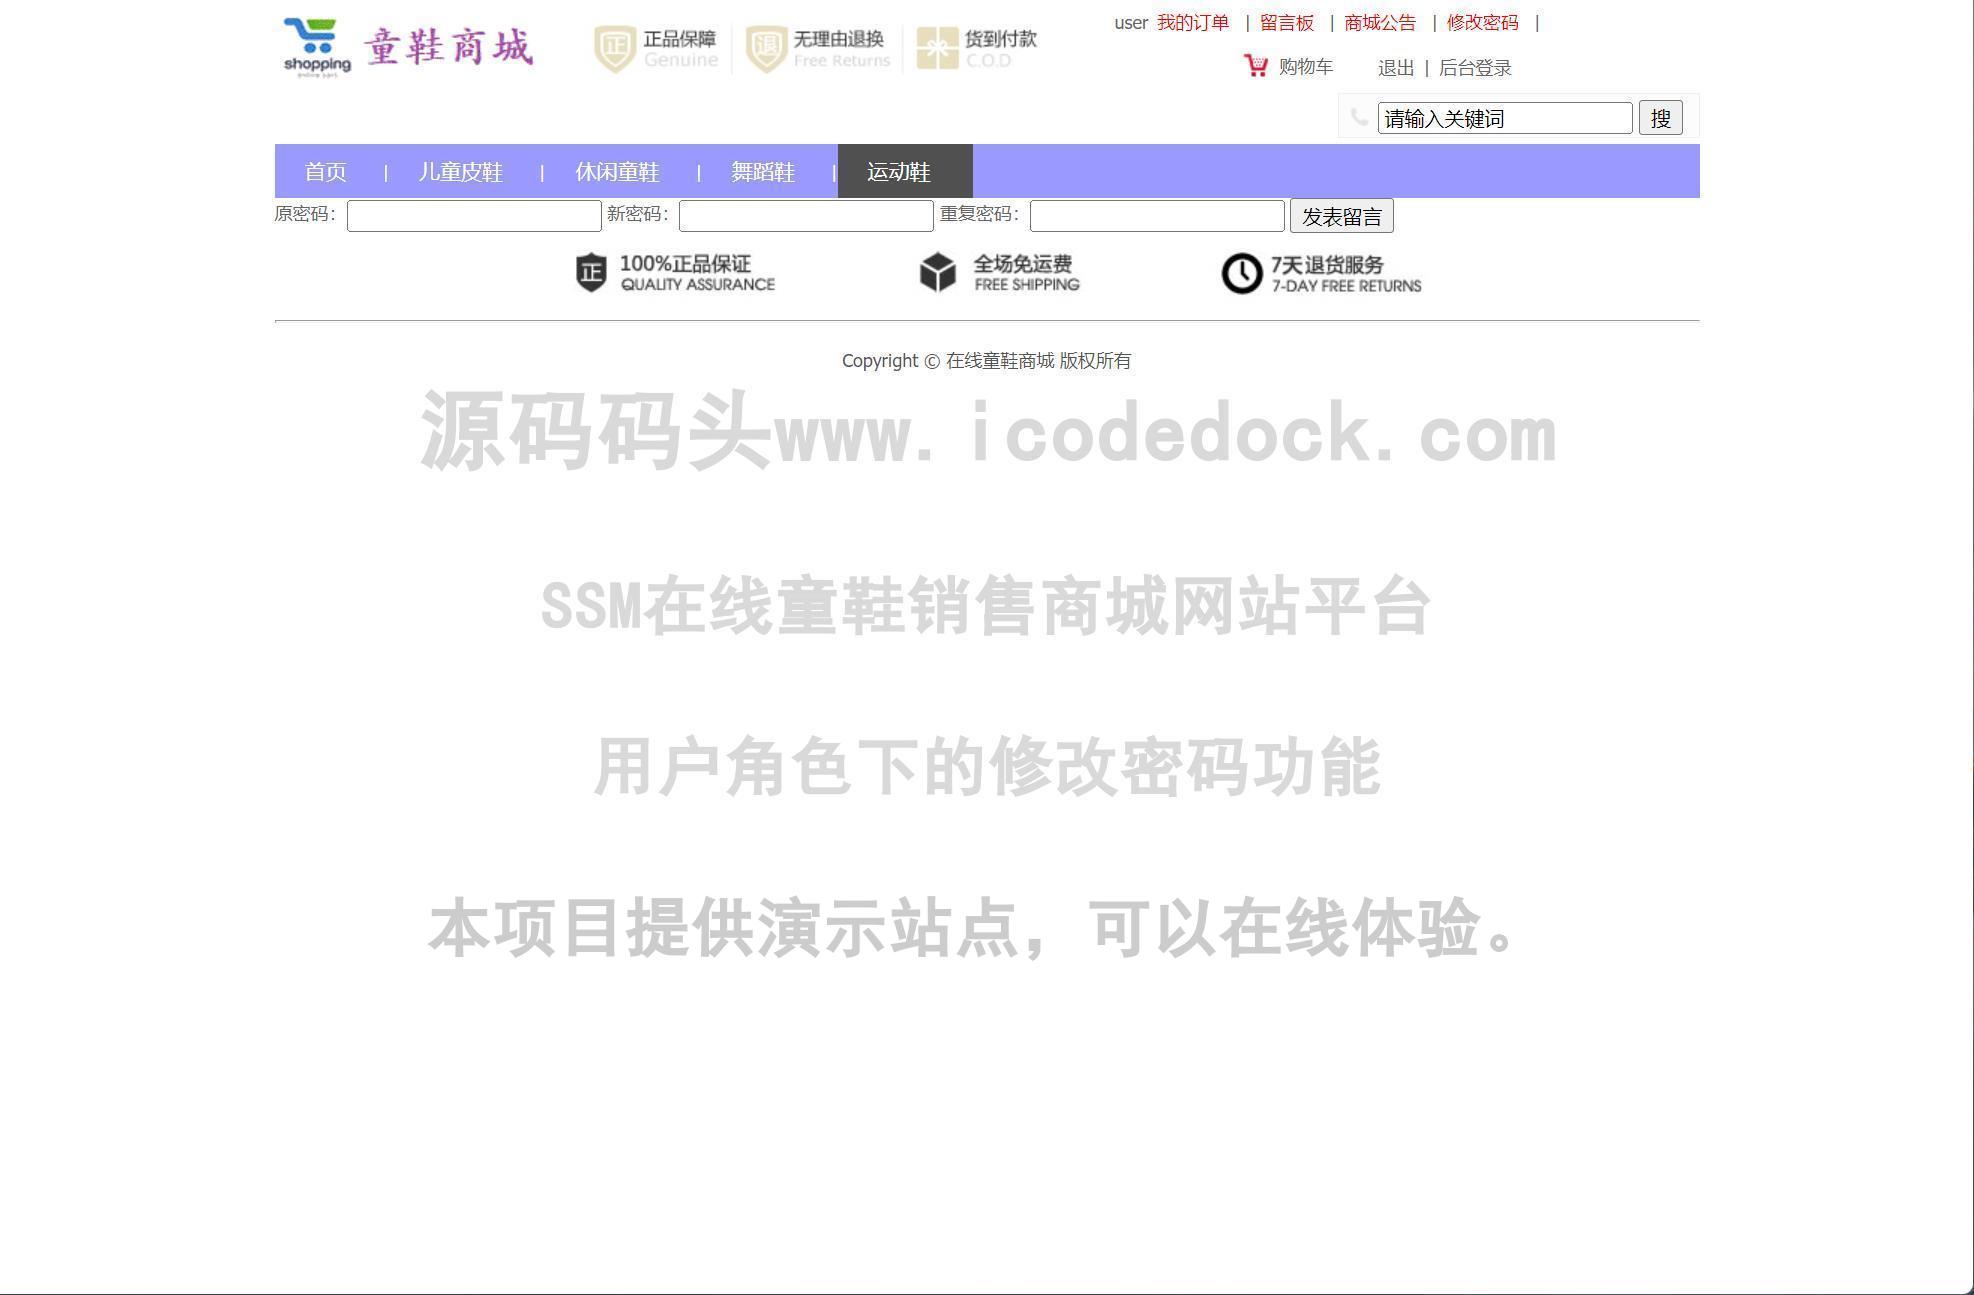 源码码头-SSM在线童鞋销售商城网站平台-用户角色-修改密码